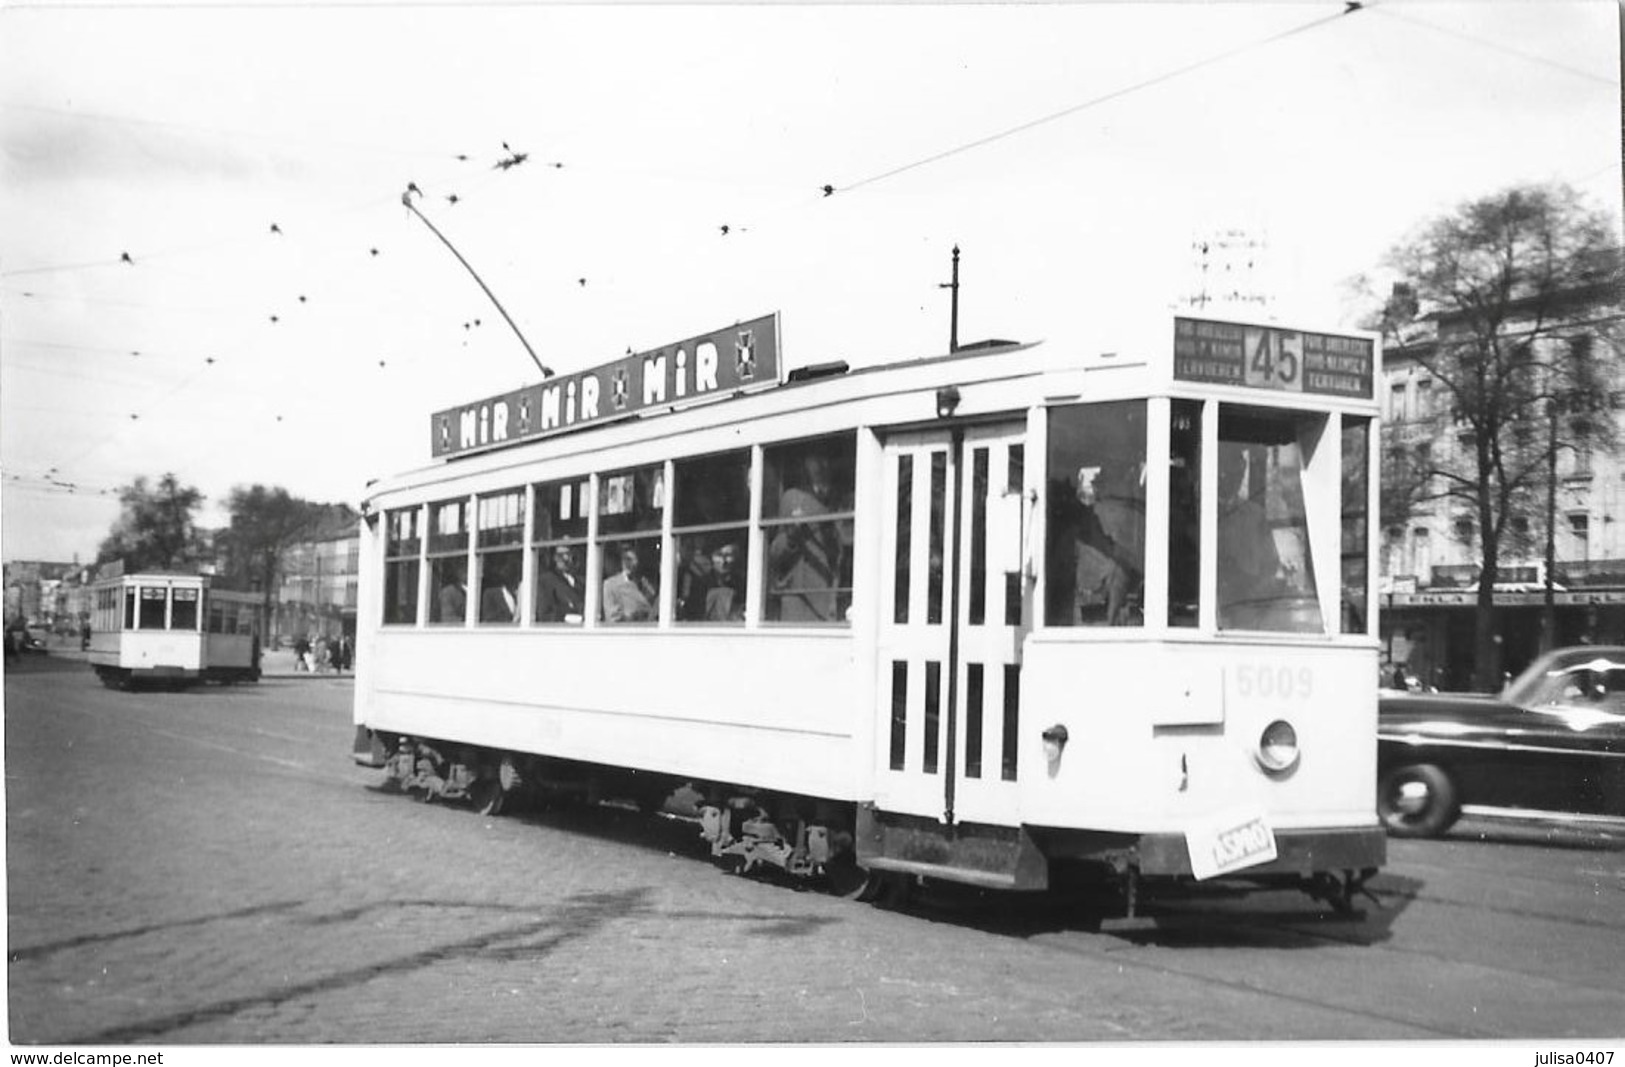 BRUXELLES (Belgique) Photographie Format Cpa Tramway électrique Place De La Constitution 1950 - Transport Urbain En Surface